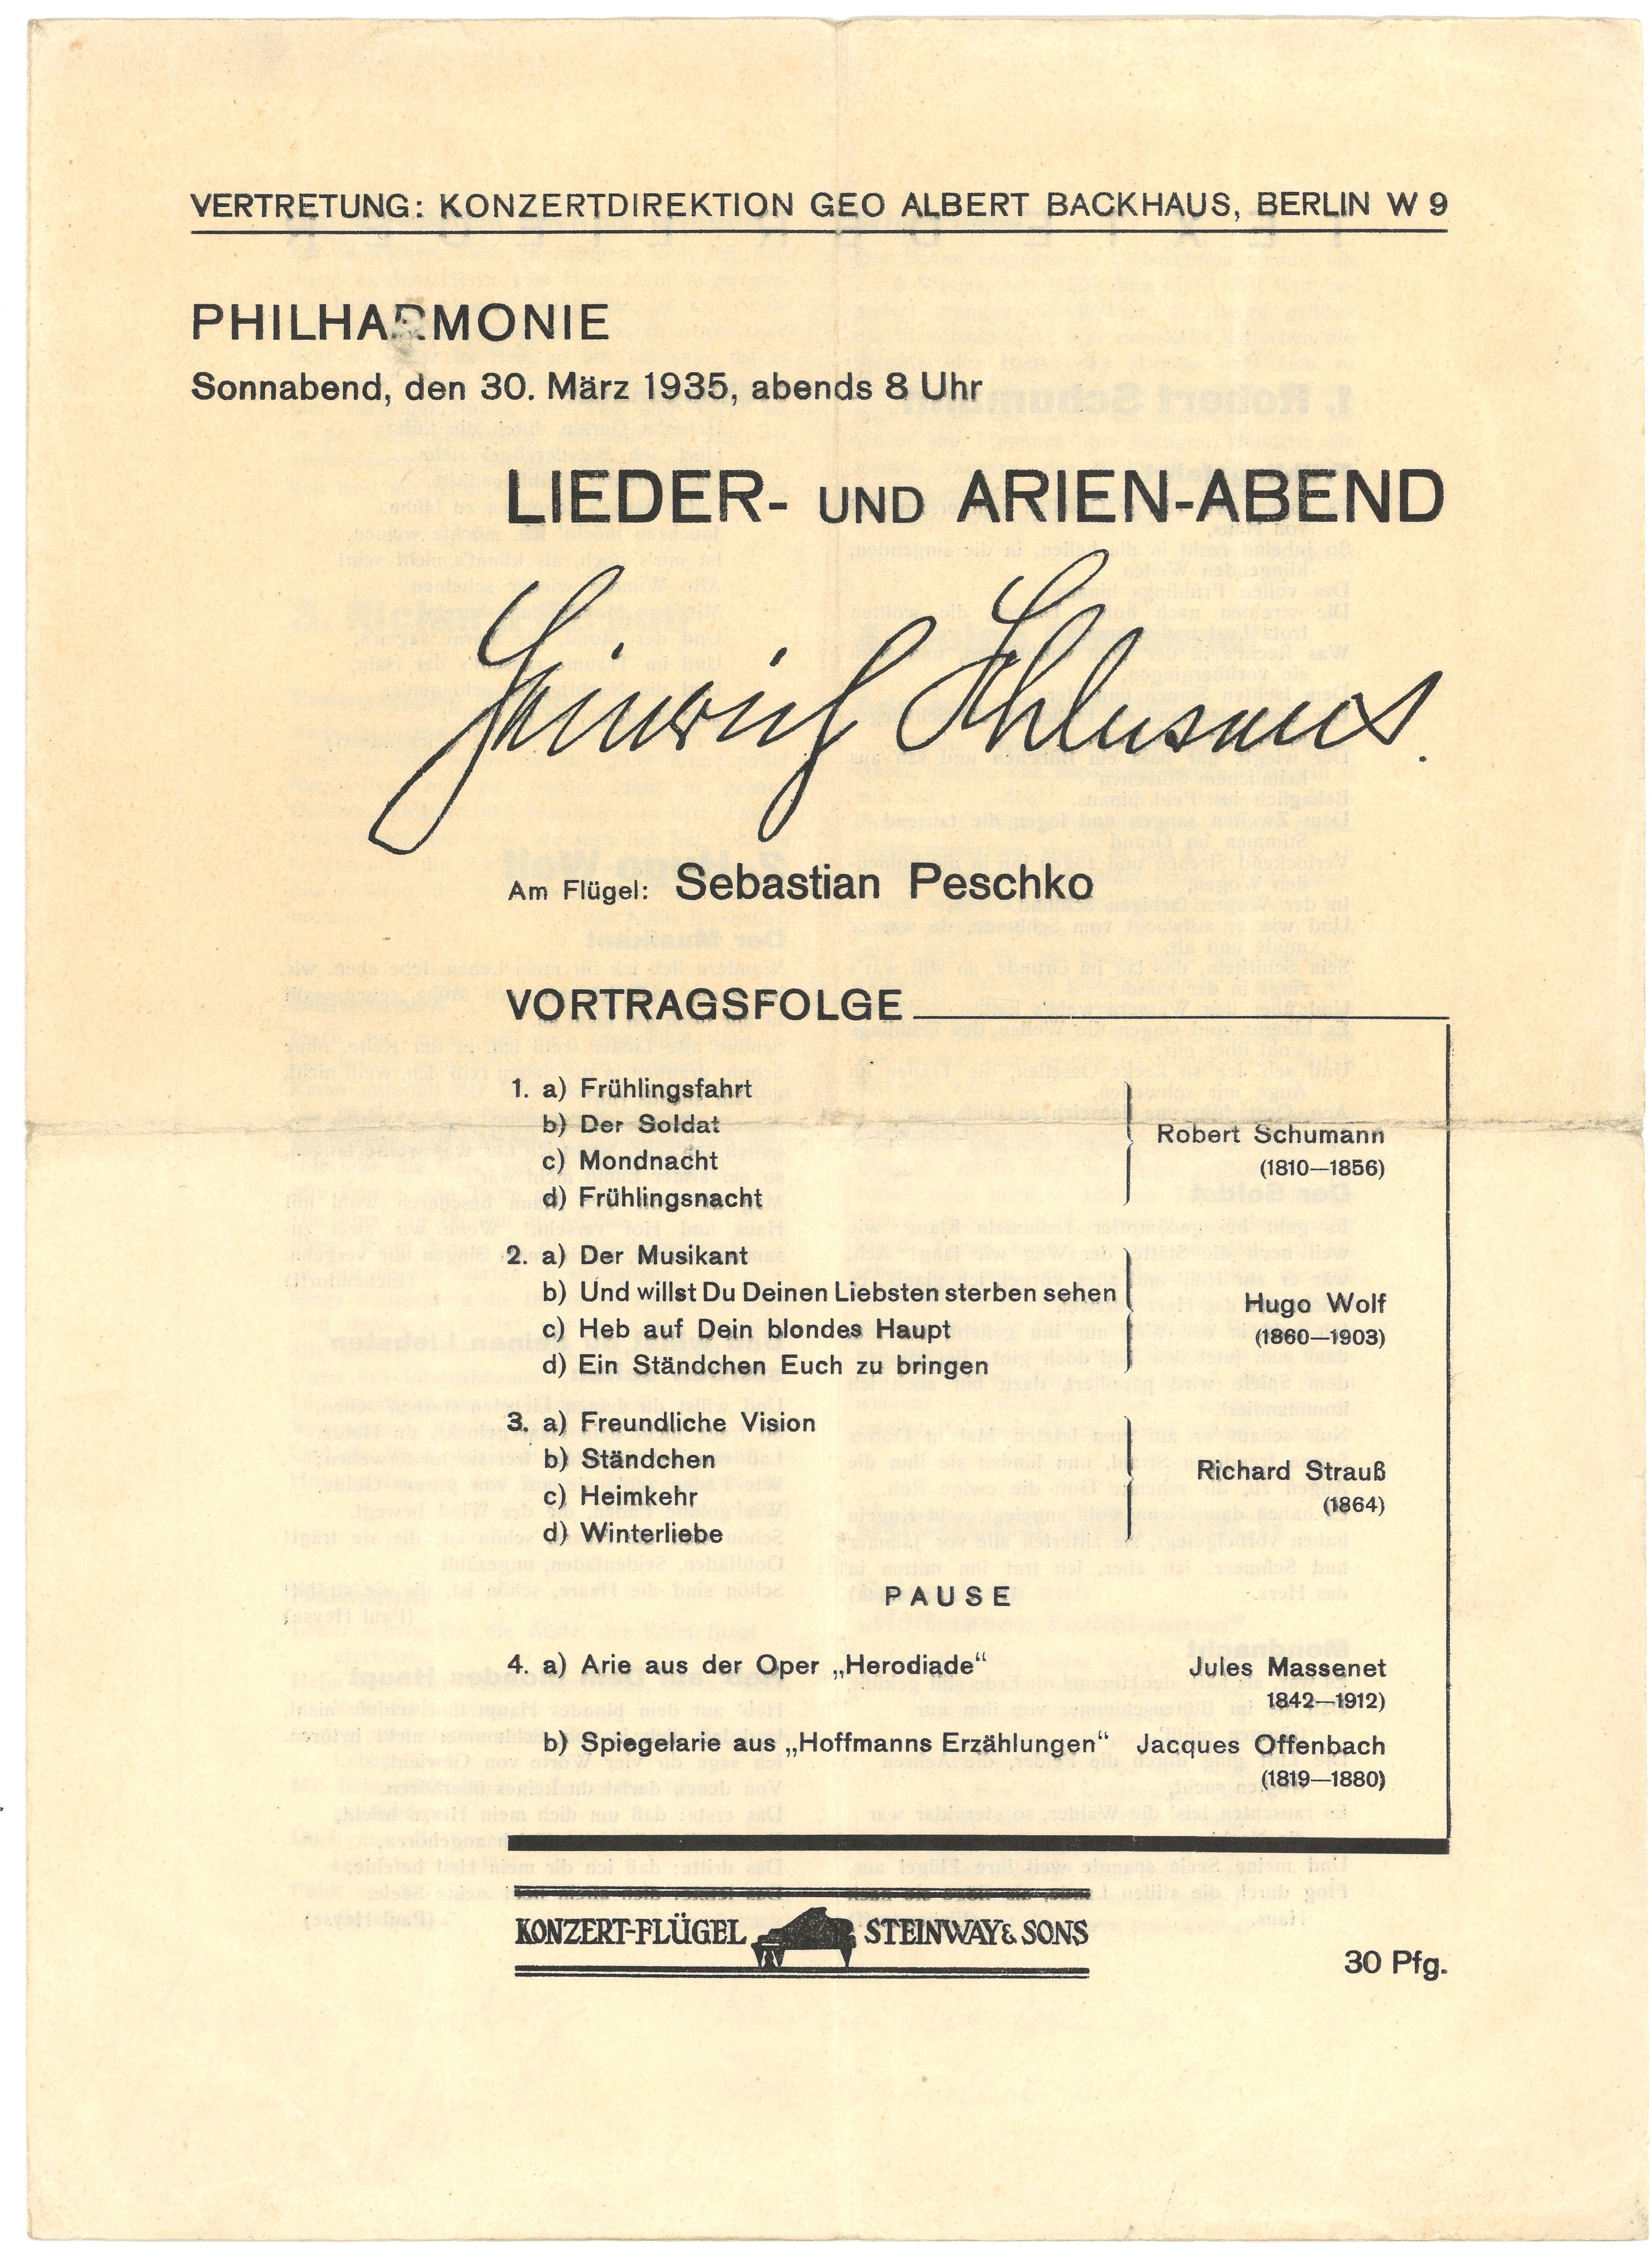 Programm zum Lieder- und Arien-Abend von Heinrich Schlusnus in der Philharmonie in Berlin am 30. März 1935 (Landesgeschichtliche Vereinigung für die Mark Brandenburg e.V., Archiv CC BY)